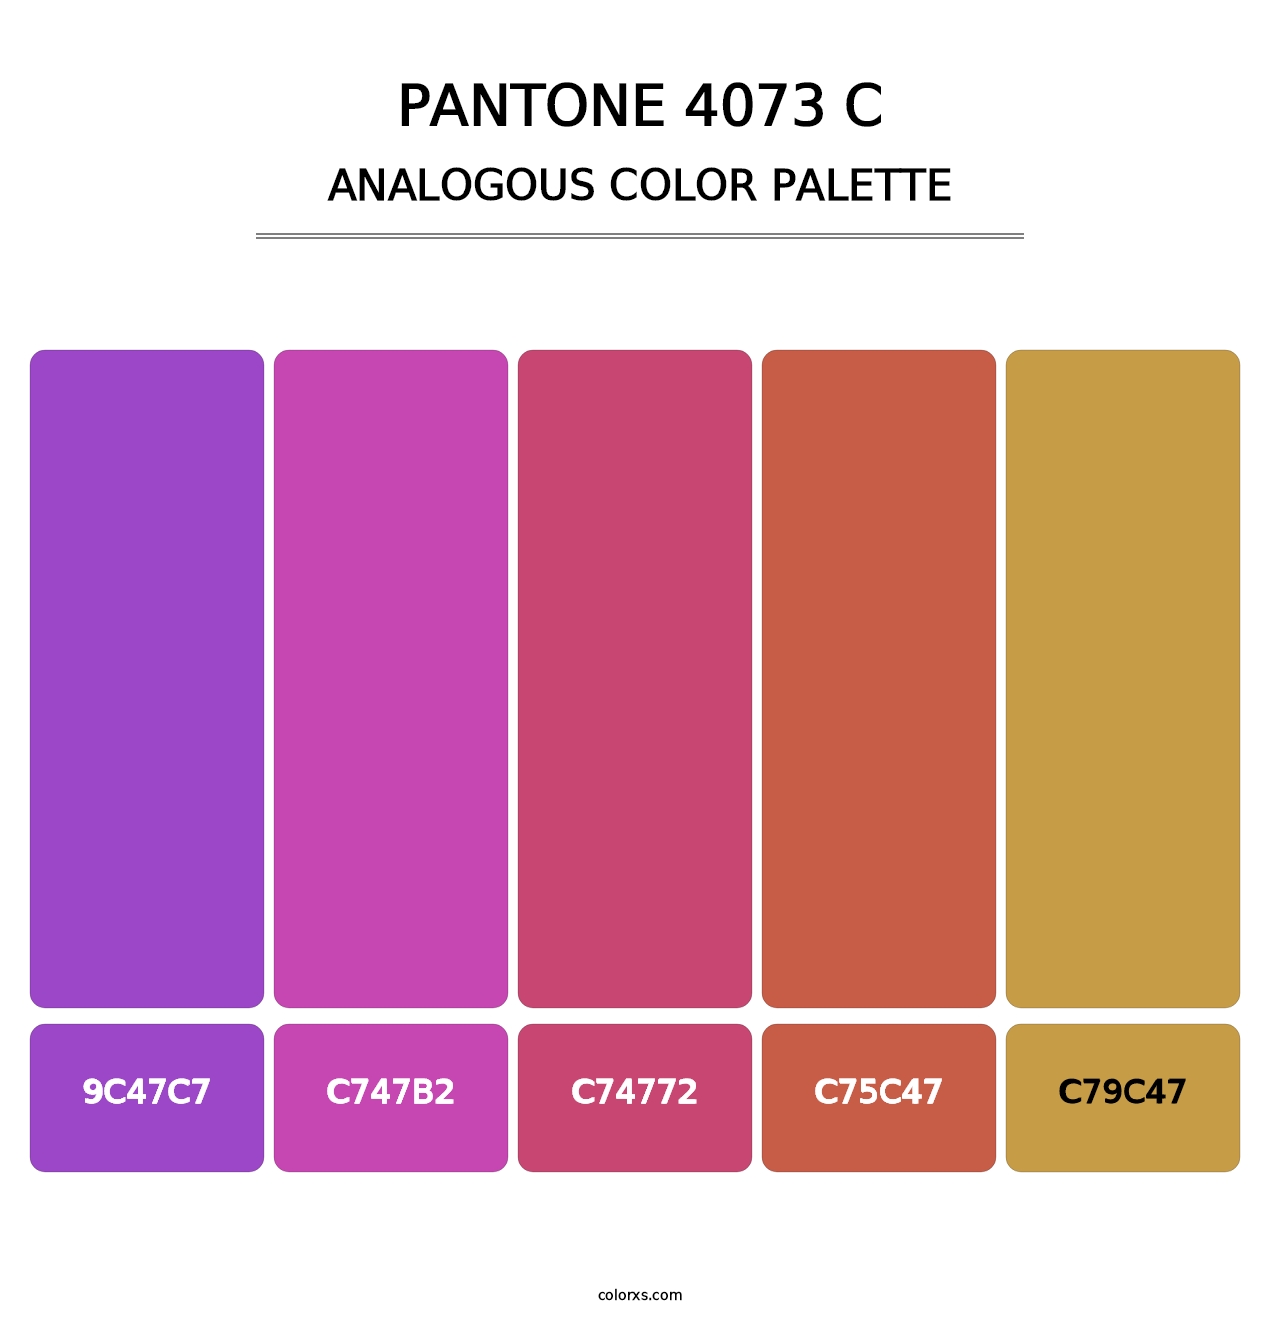 PANTONE 4073 C - Analogous Color Palette